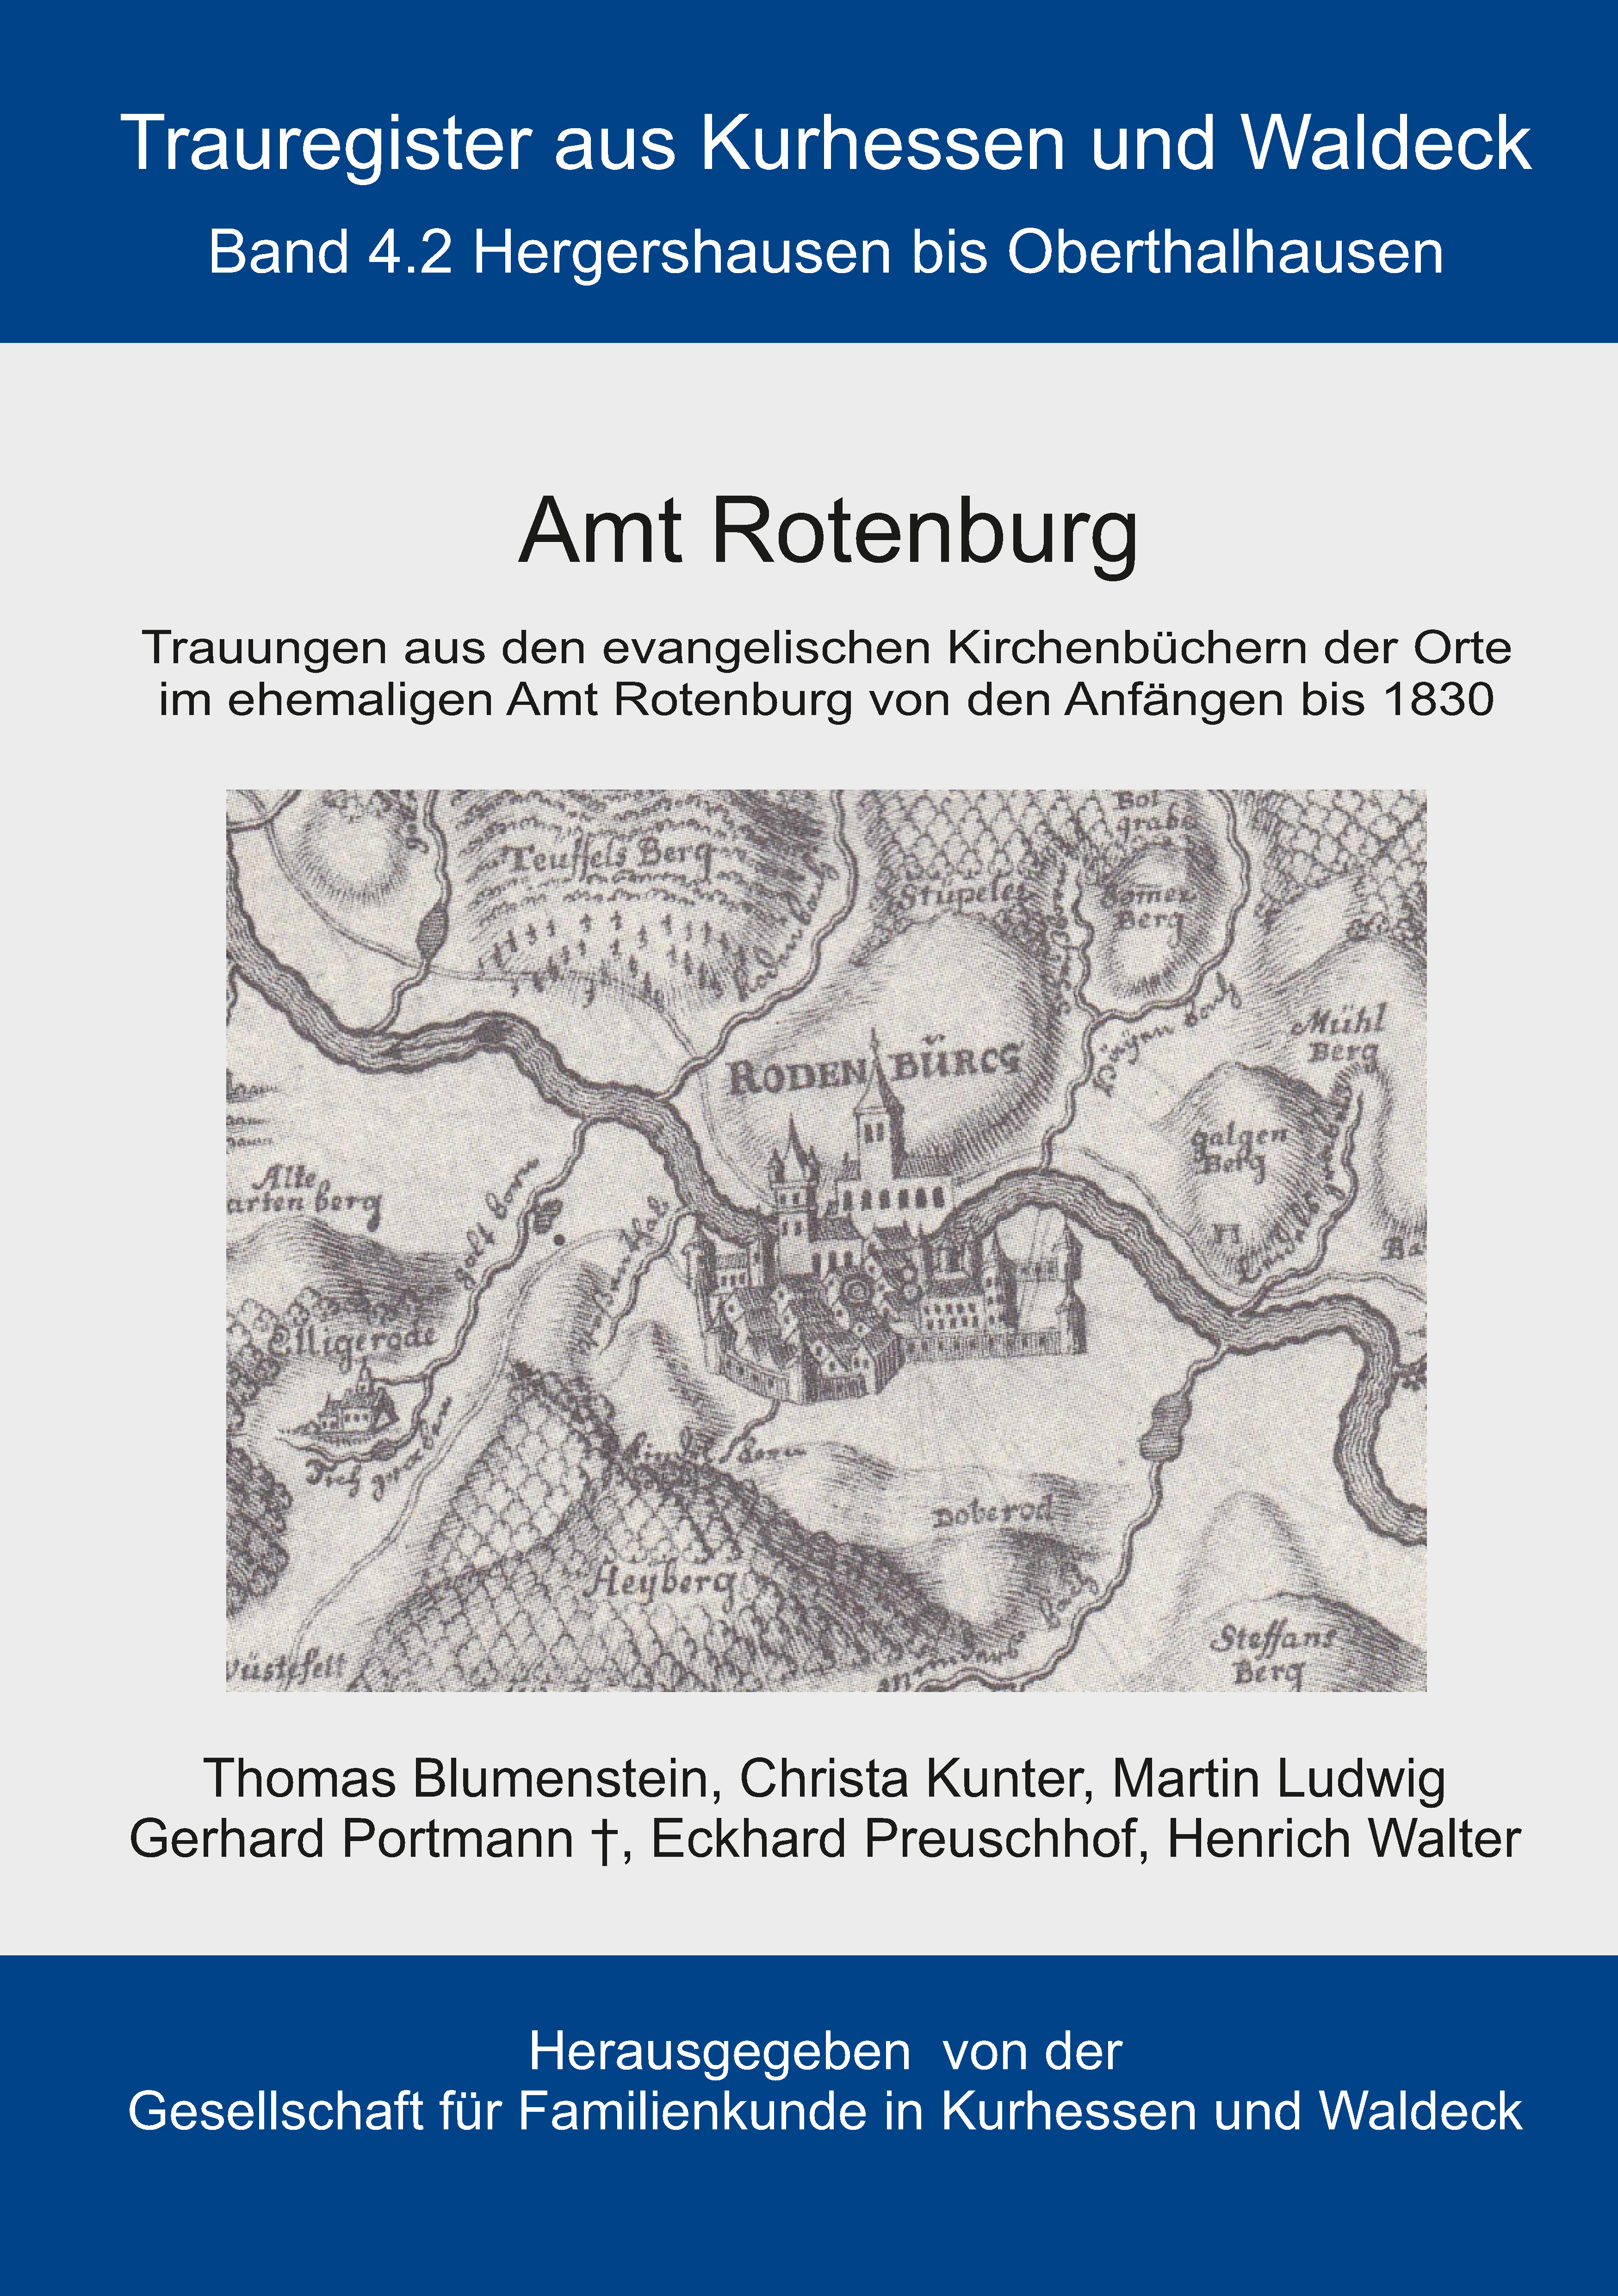 Trauregister aus Kurhessen und Waldeck, Band 4.2 Amt Rotenburg